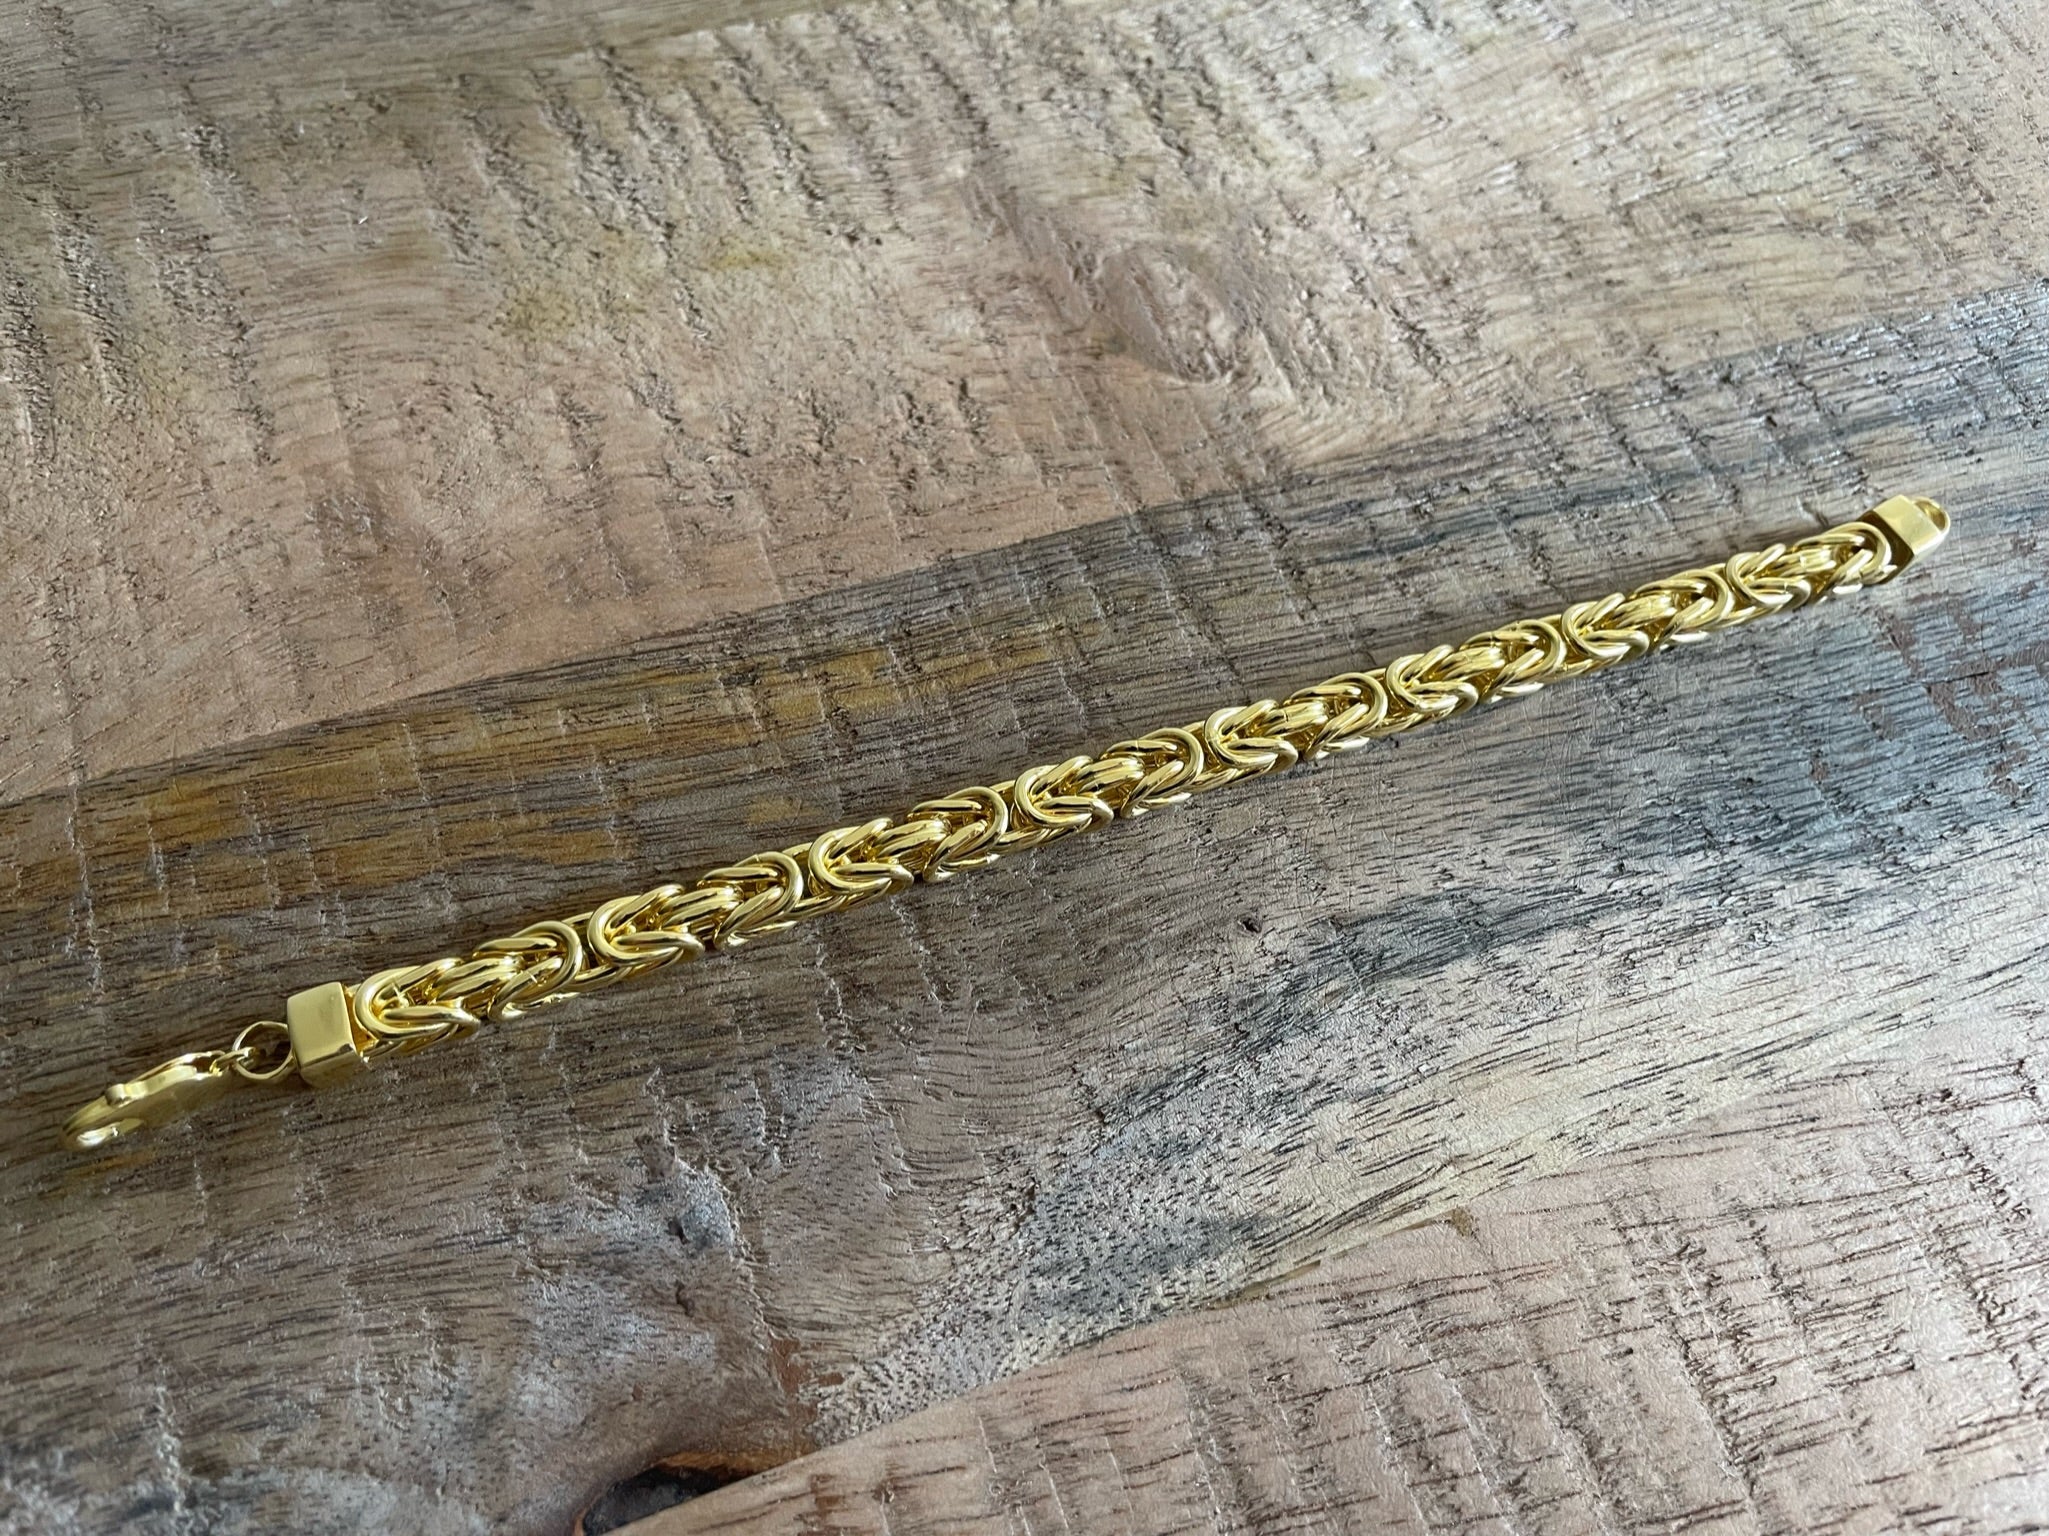 Gold Byzantine Bracelet - 7mm